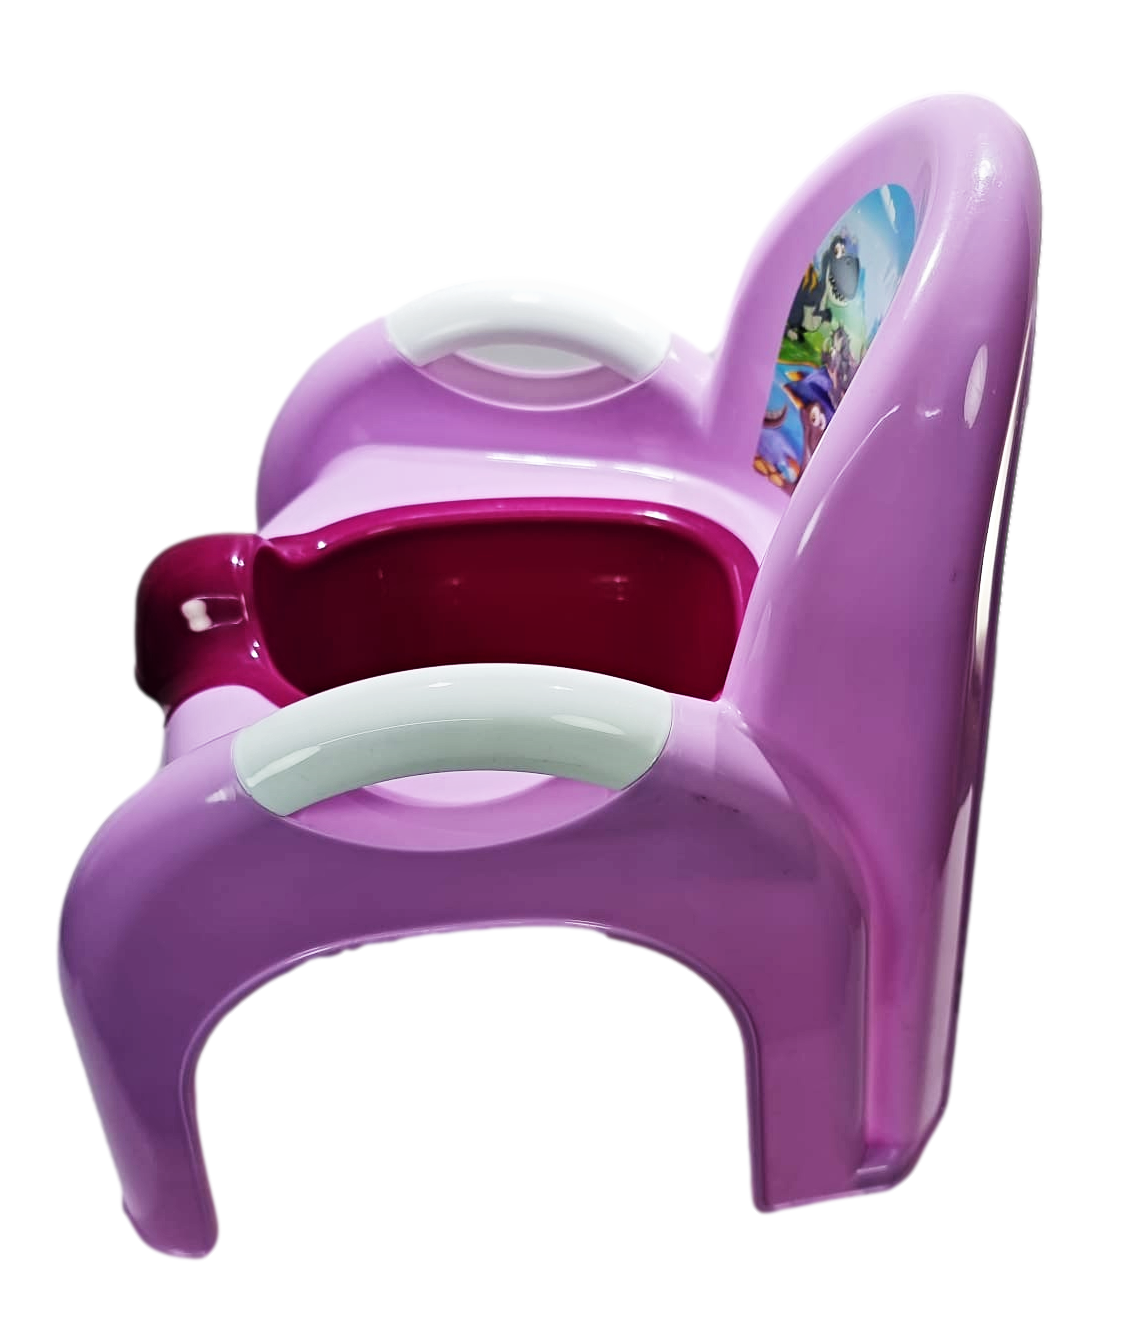 Portable Potty Chair H32cm W29cm L27cm Assorted Colours AK639 (Parcel Rate)p